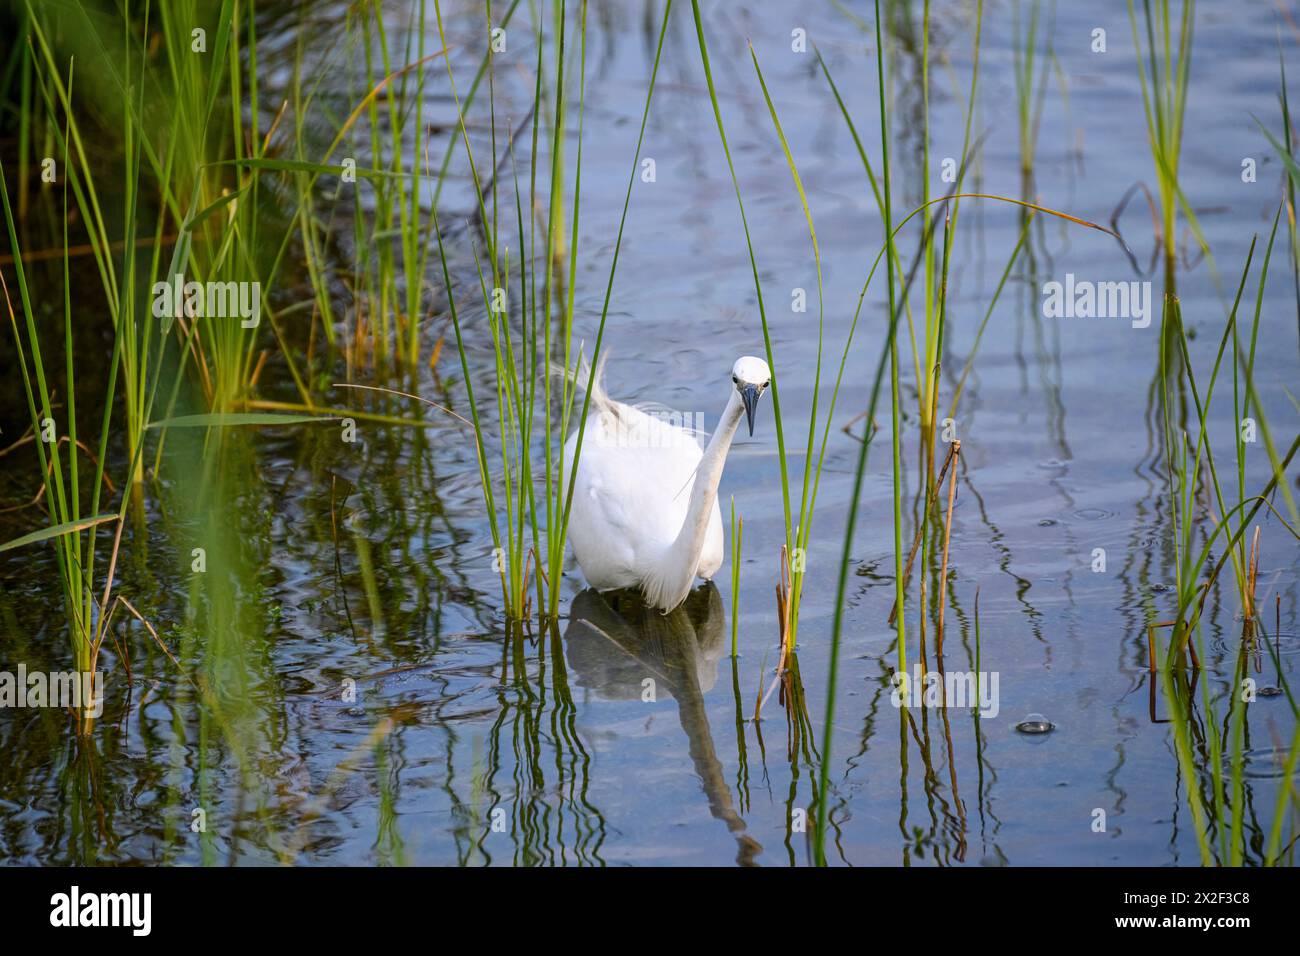 Egretta garzetta - kleiner Egret, dieser kleine weiße Reiher ist in wärmeren Teilen Europas und Asiens beheimatet, fotografiert am künstlichen ökologischen Teich und Stockfoto